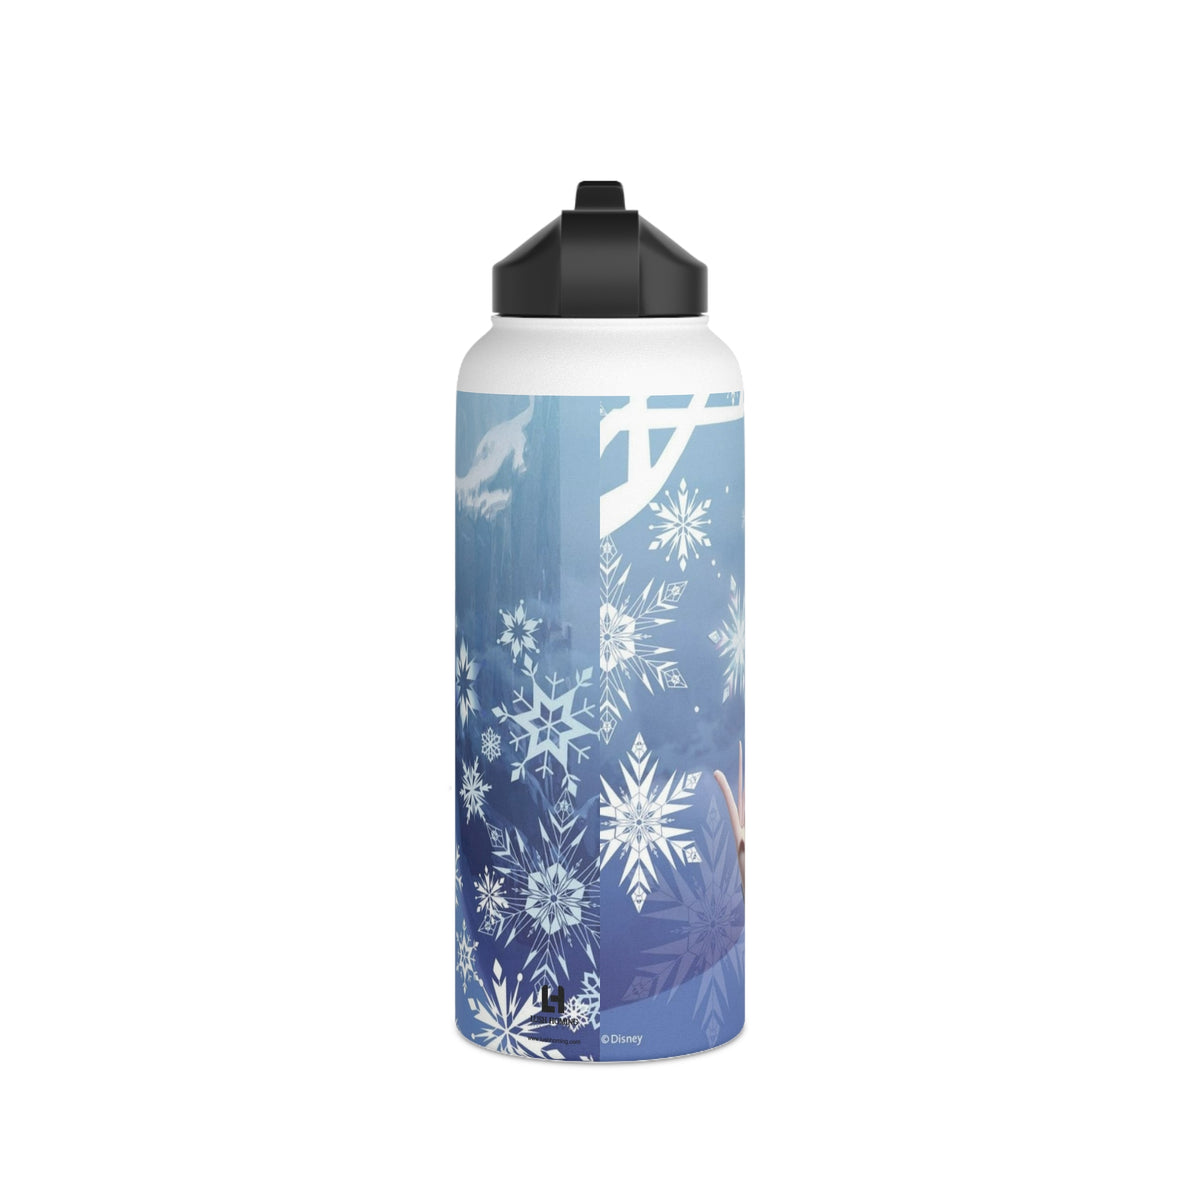 Frozen Elsa Stainless Steel Water Bottle